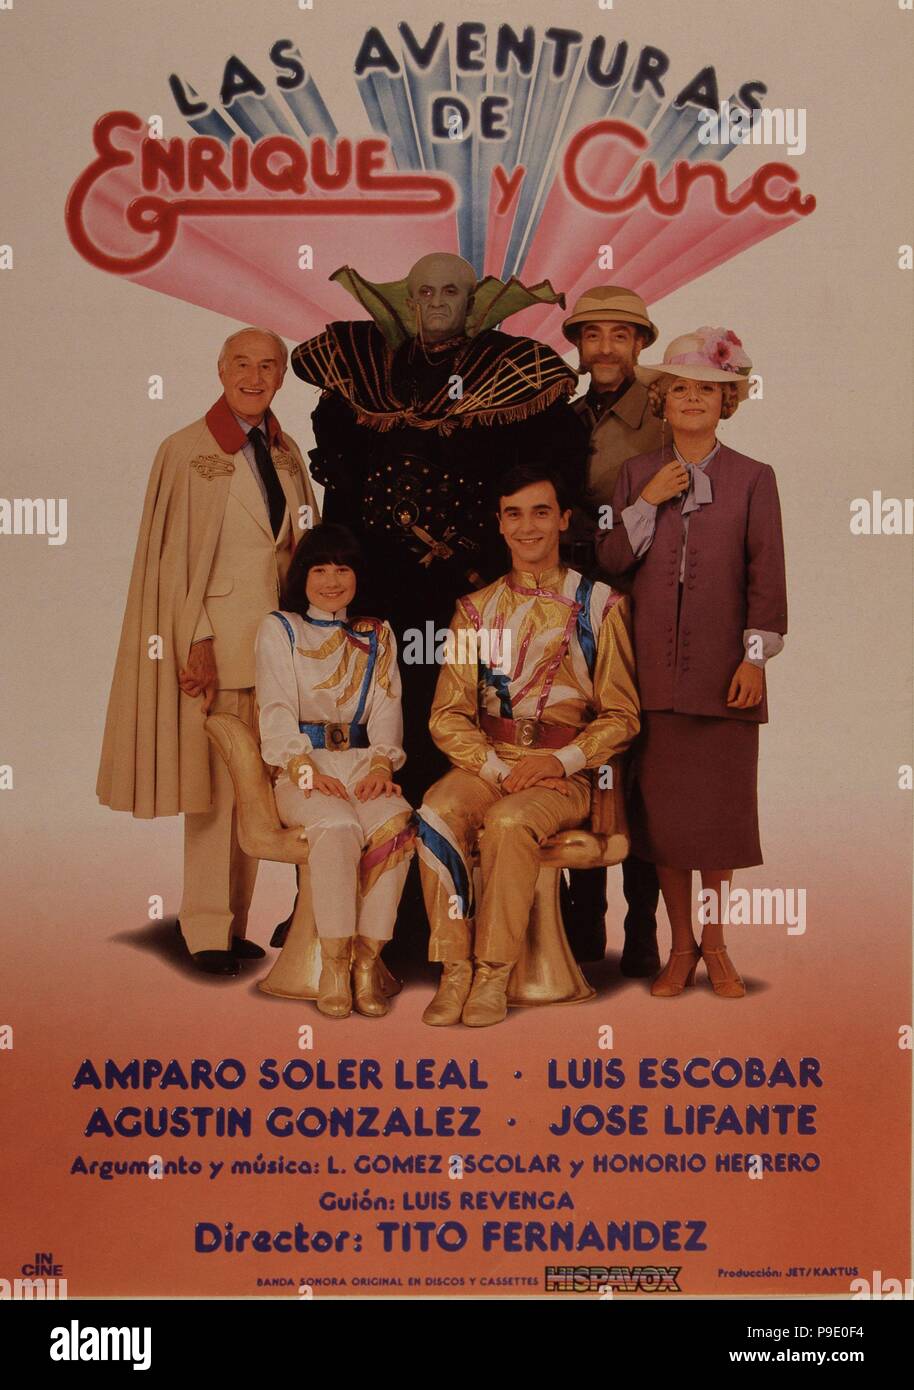 PELICULA : LAS AVENTURAS DE ENRIQUE Y ANA , 1981  DIRECTOR : TITO FERNANDEZ  ACTORES : ENRIQUE DEL POZO , ANA ANGUITA , LUIS ESCOBAR , AMPARO SOLER LEAL. Stock Photo